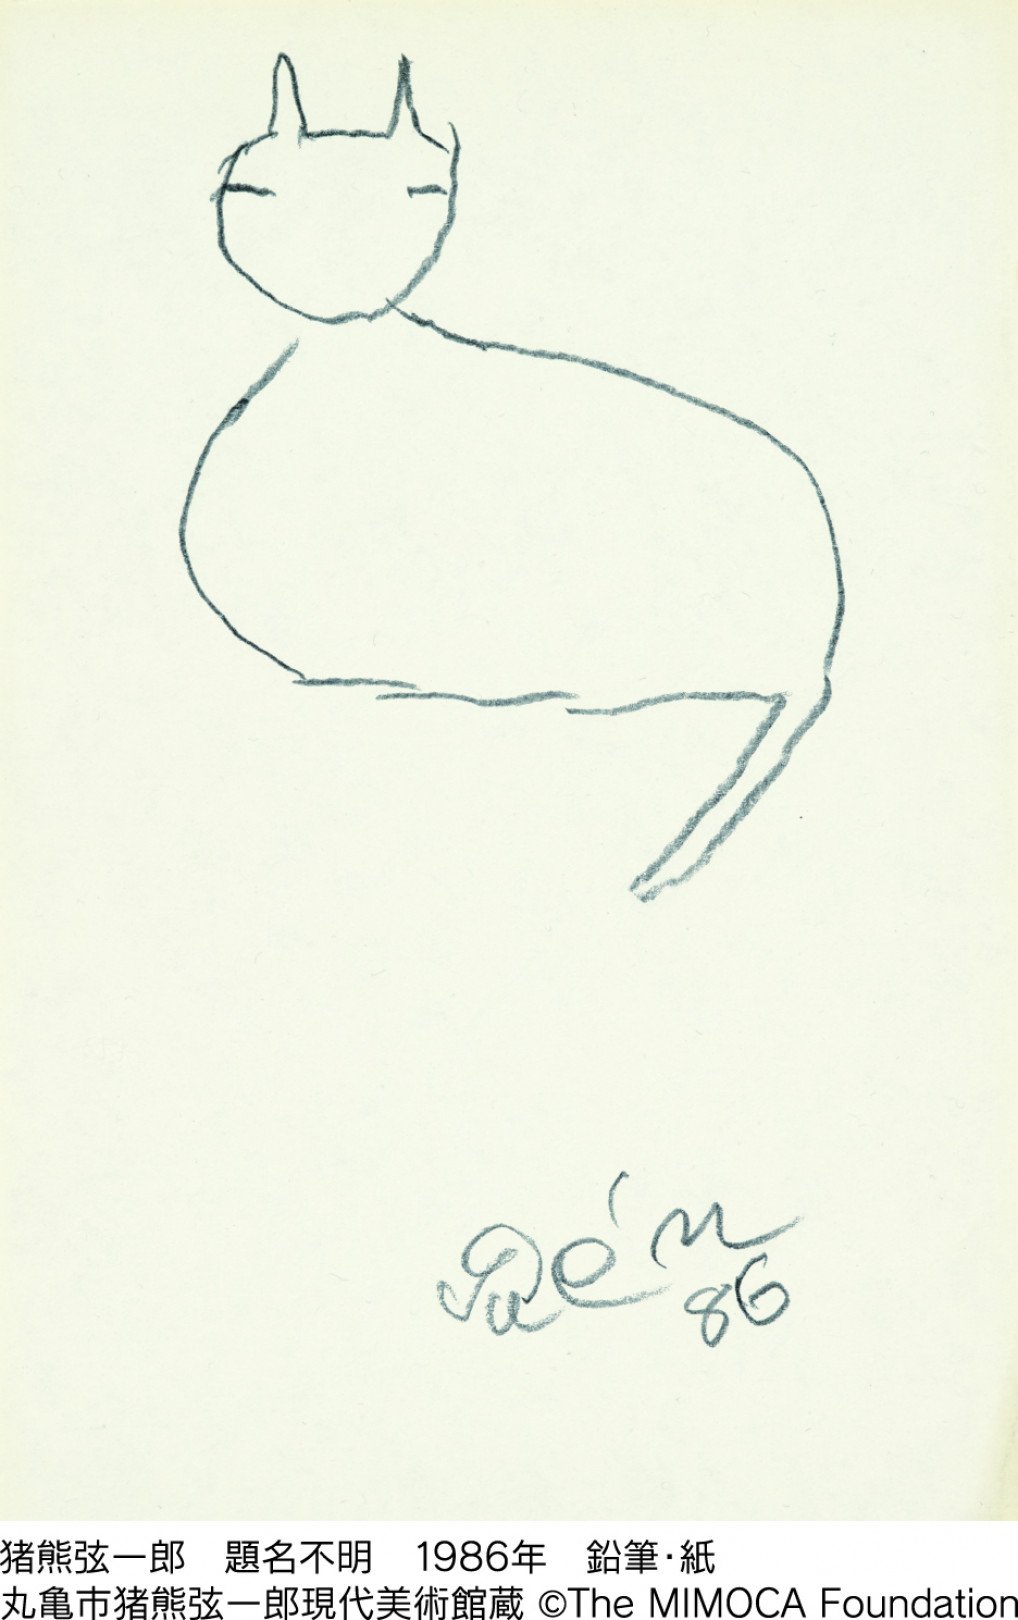 猪熊弦一郎 題名不明 1986年 鉛筆・紙 丸亀市猪熊弦一郎現代美術館蔵 ©The MIMOCA Foundation